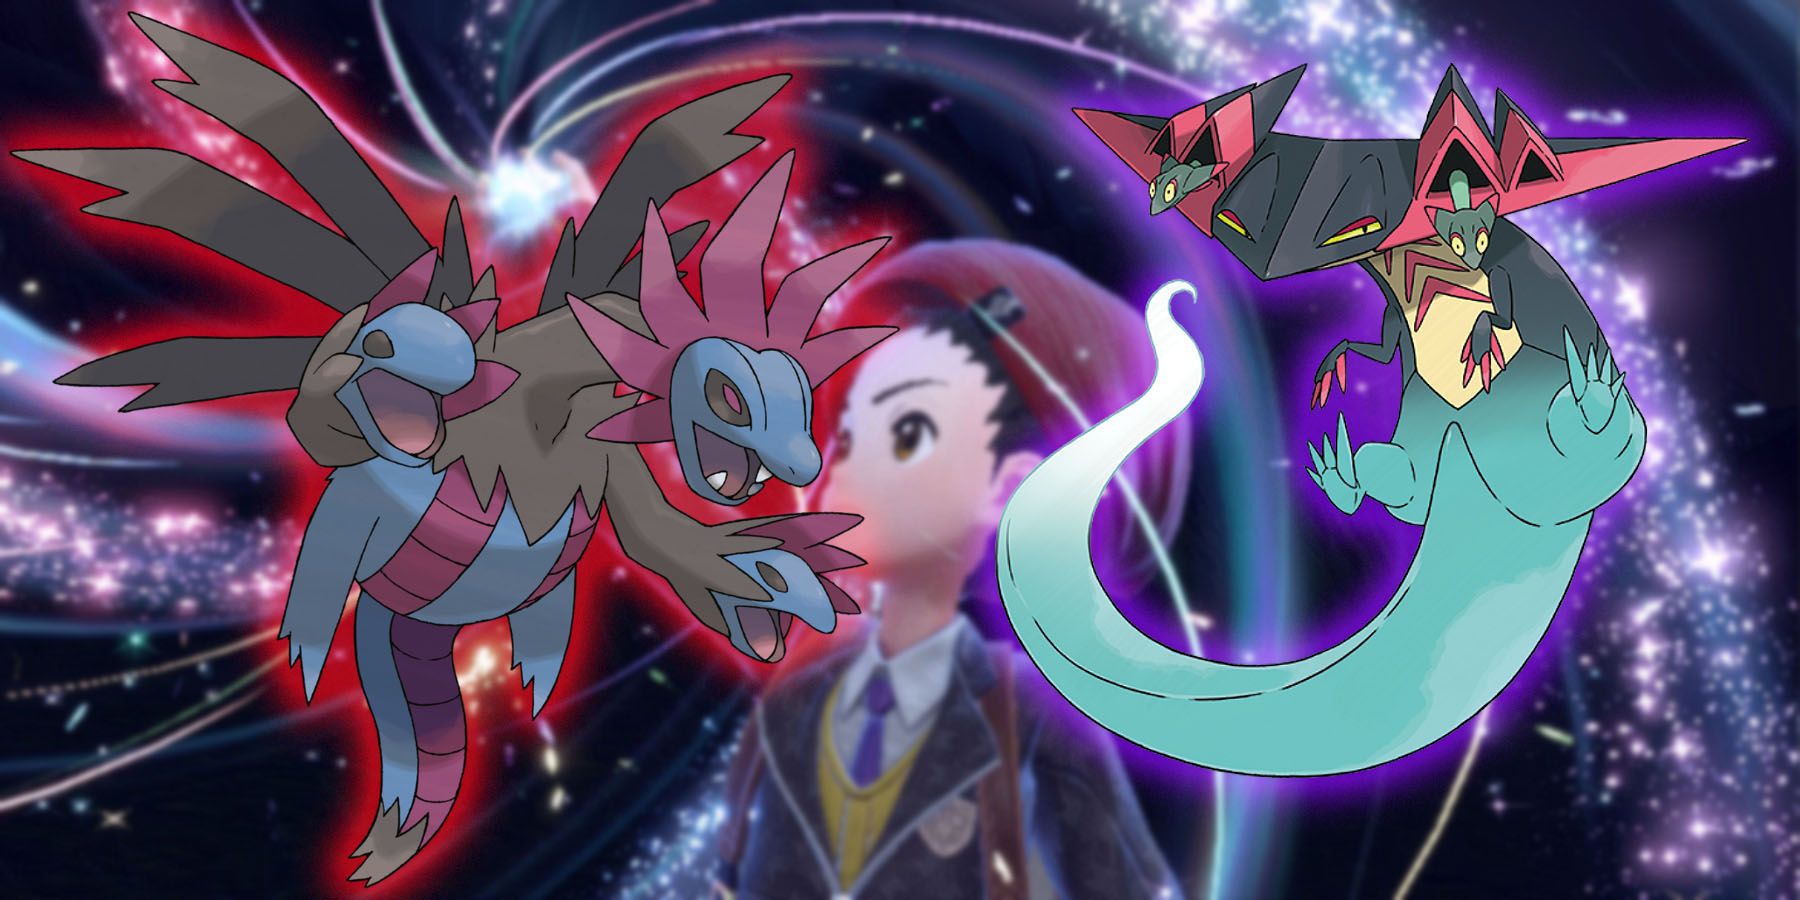 Daniel #OfertasNintendo Reenlsober 👾 on X: Novos Pokémon serão liberados  em eventos de Tera Raid em Pokémon Scarlet Violet #PokemonPresents   / X